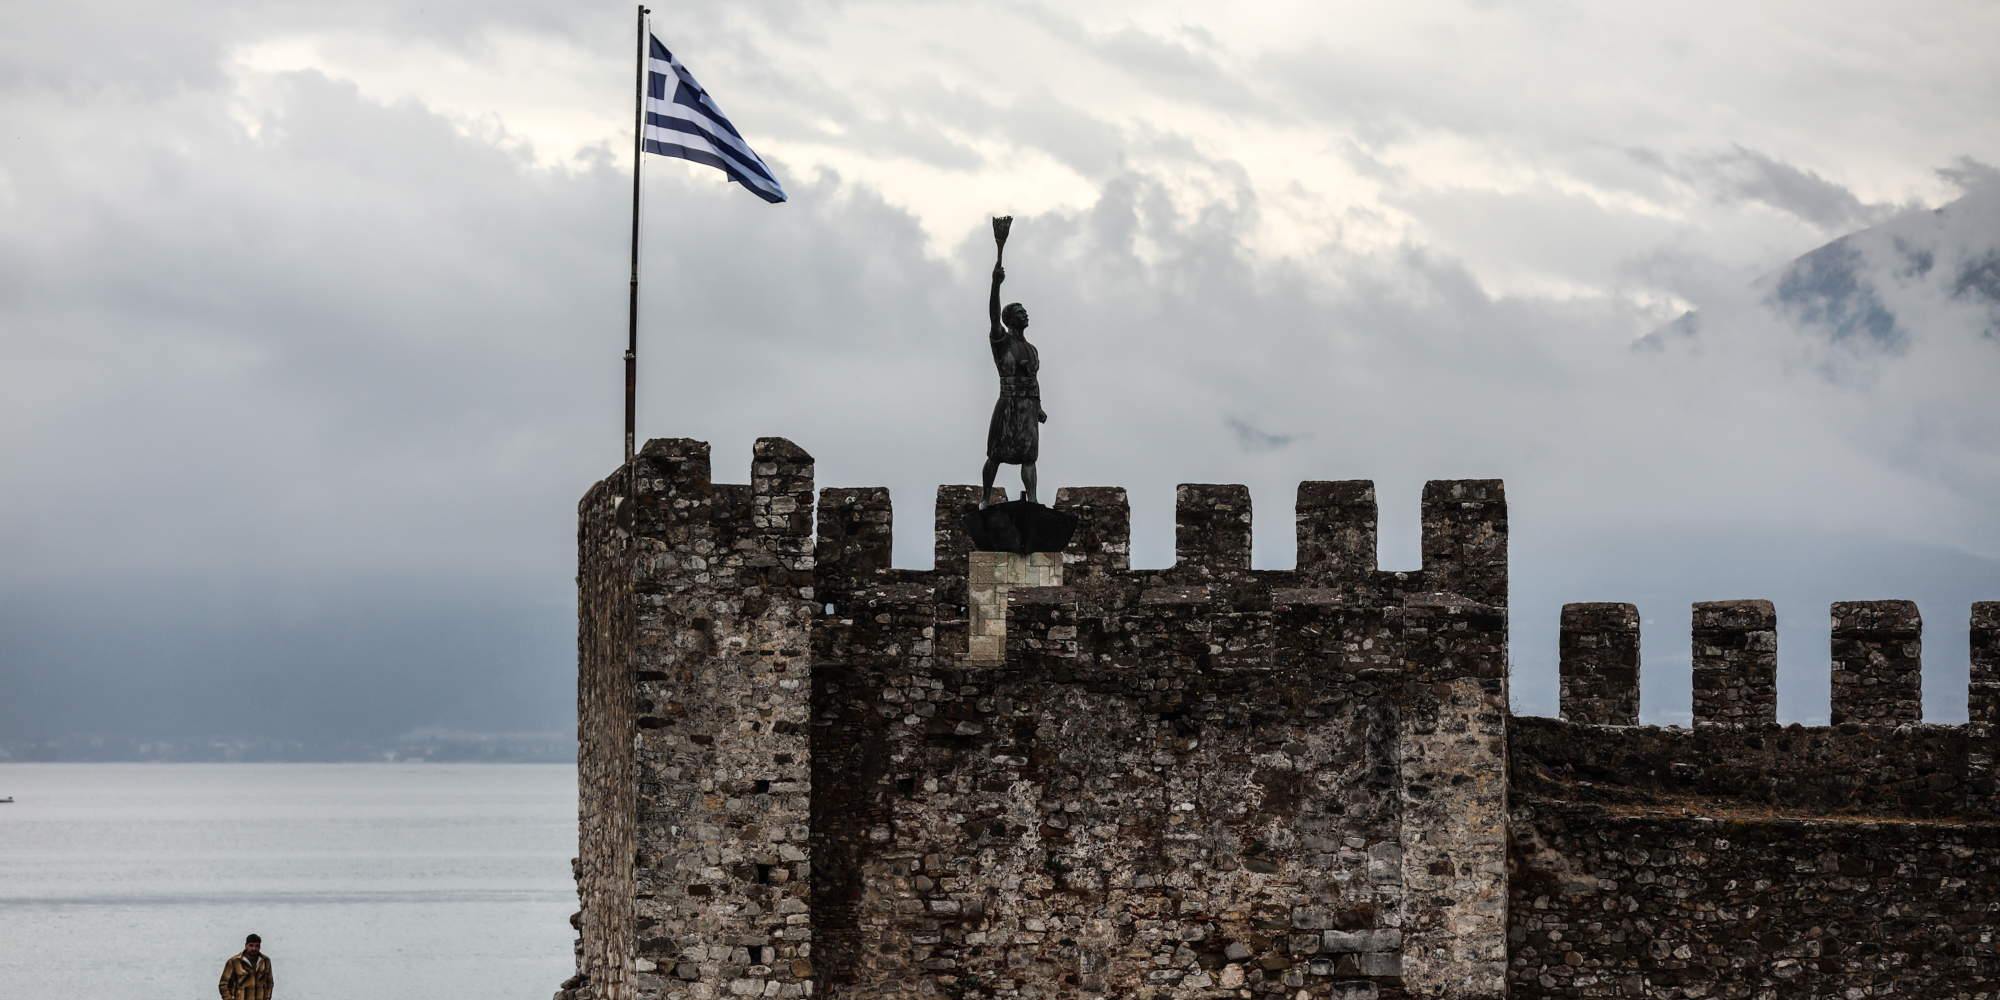 Η Ναύπακτος, το άγαλμα του Ανεμογιάννη στο λιμάνι της πόλης